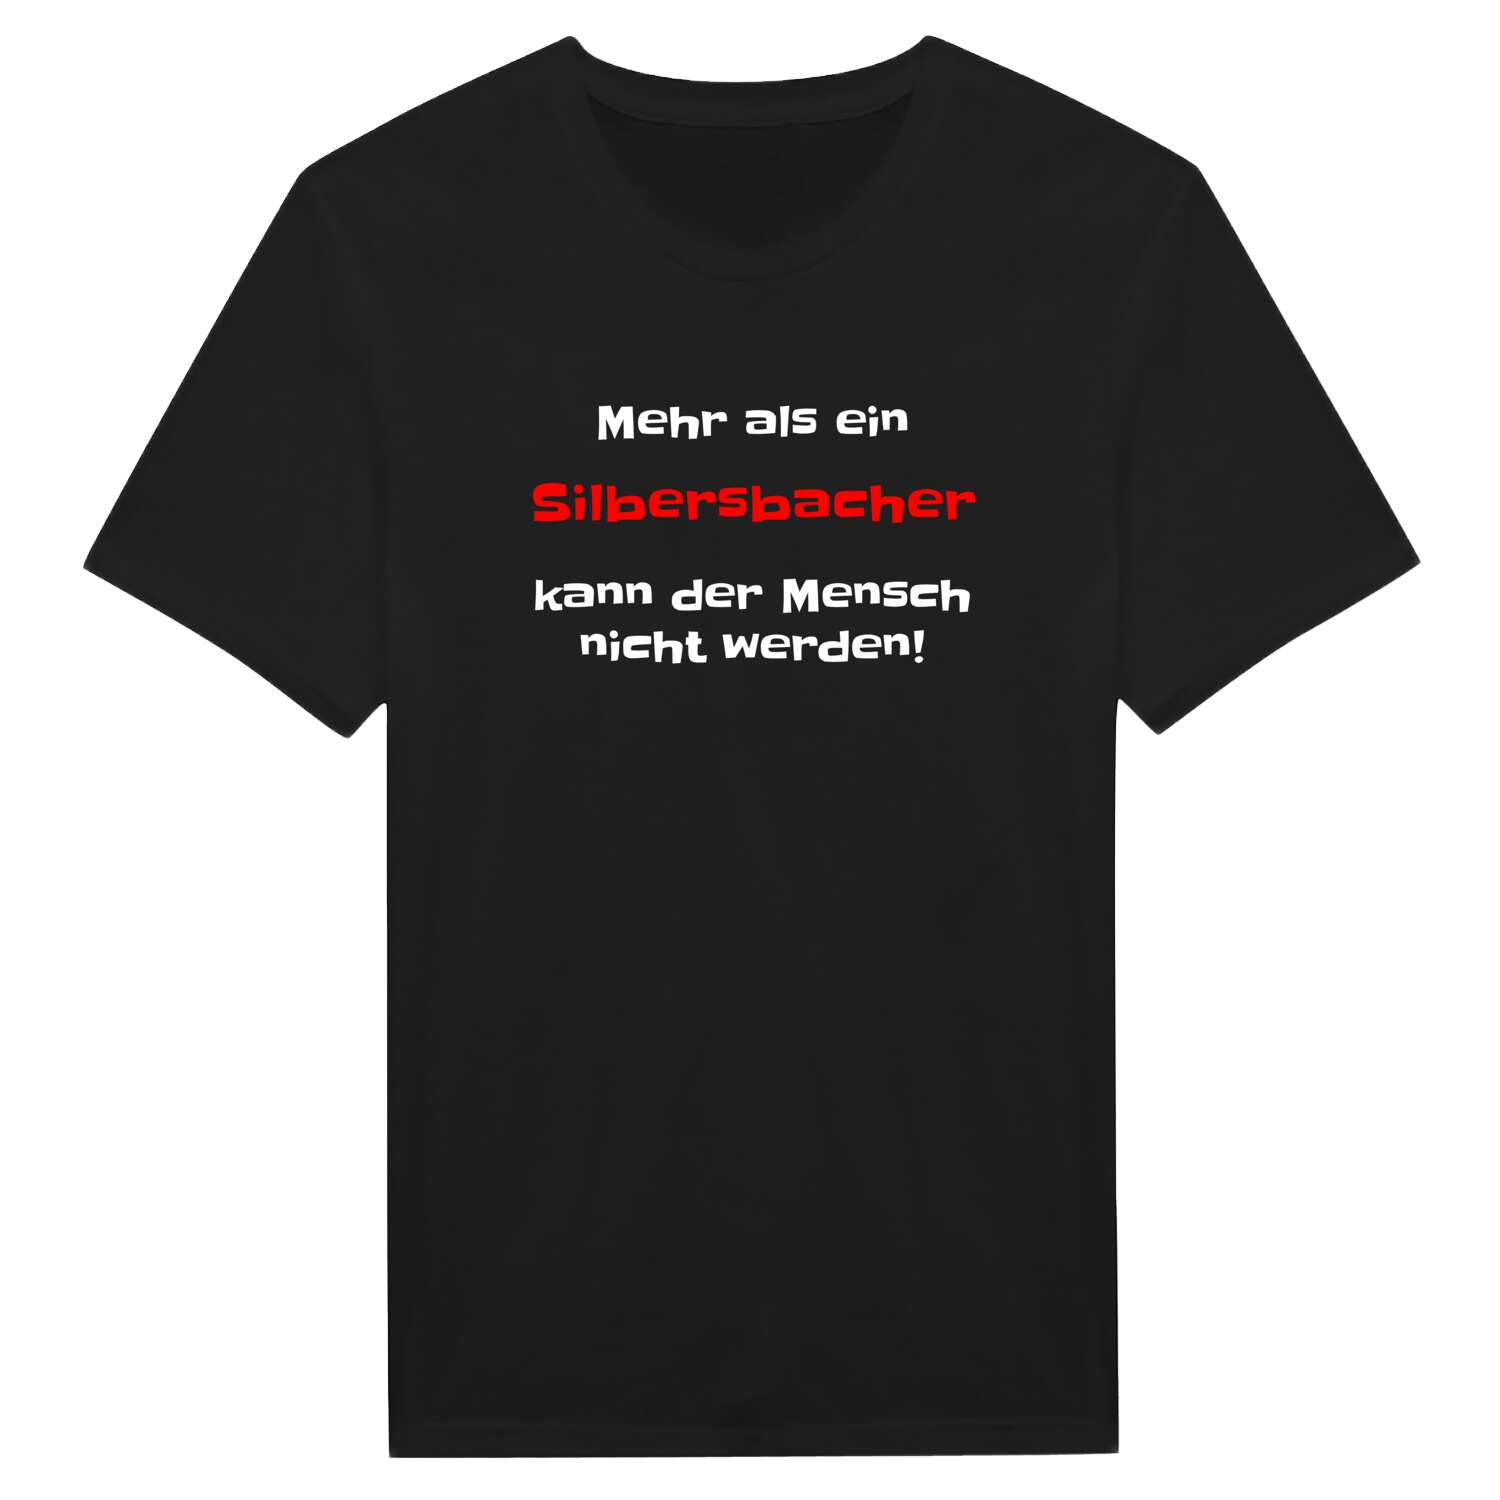 Silbersbach T-Shirt »Mehr als ein«